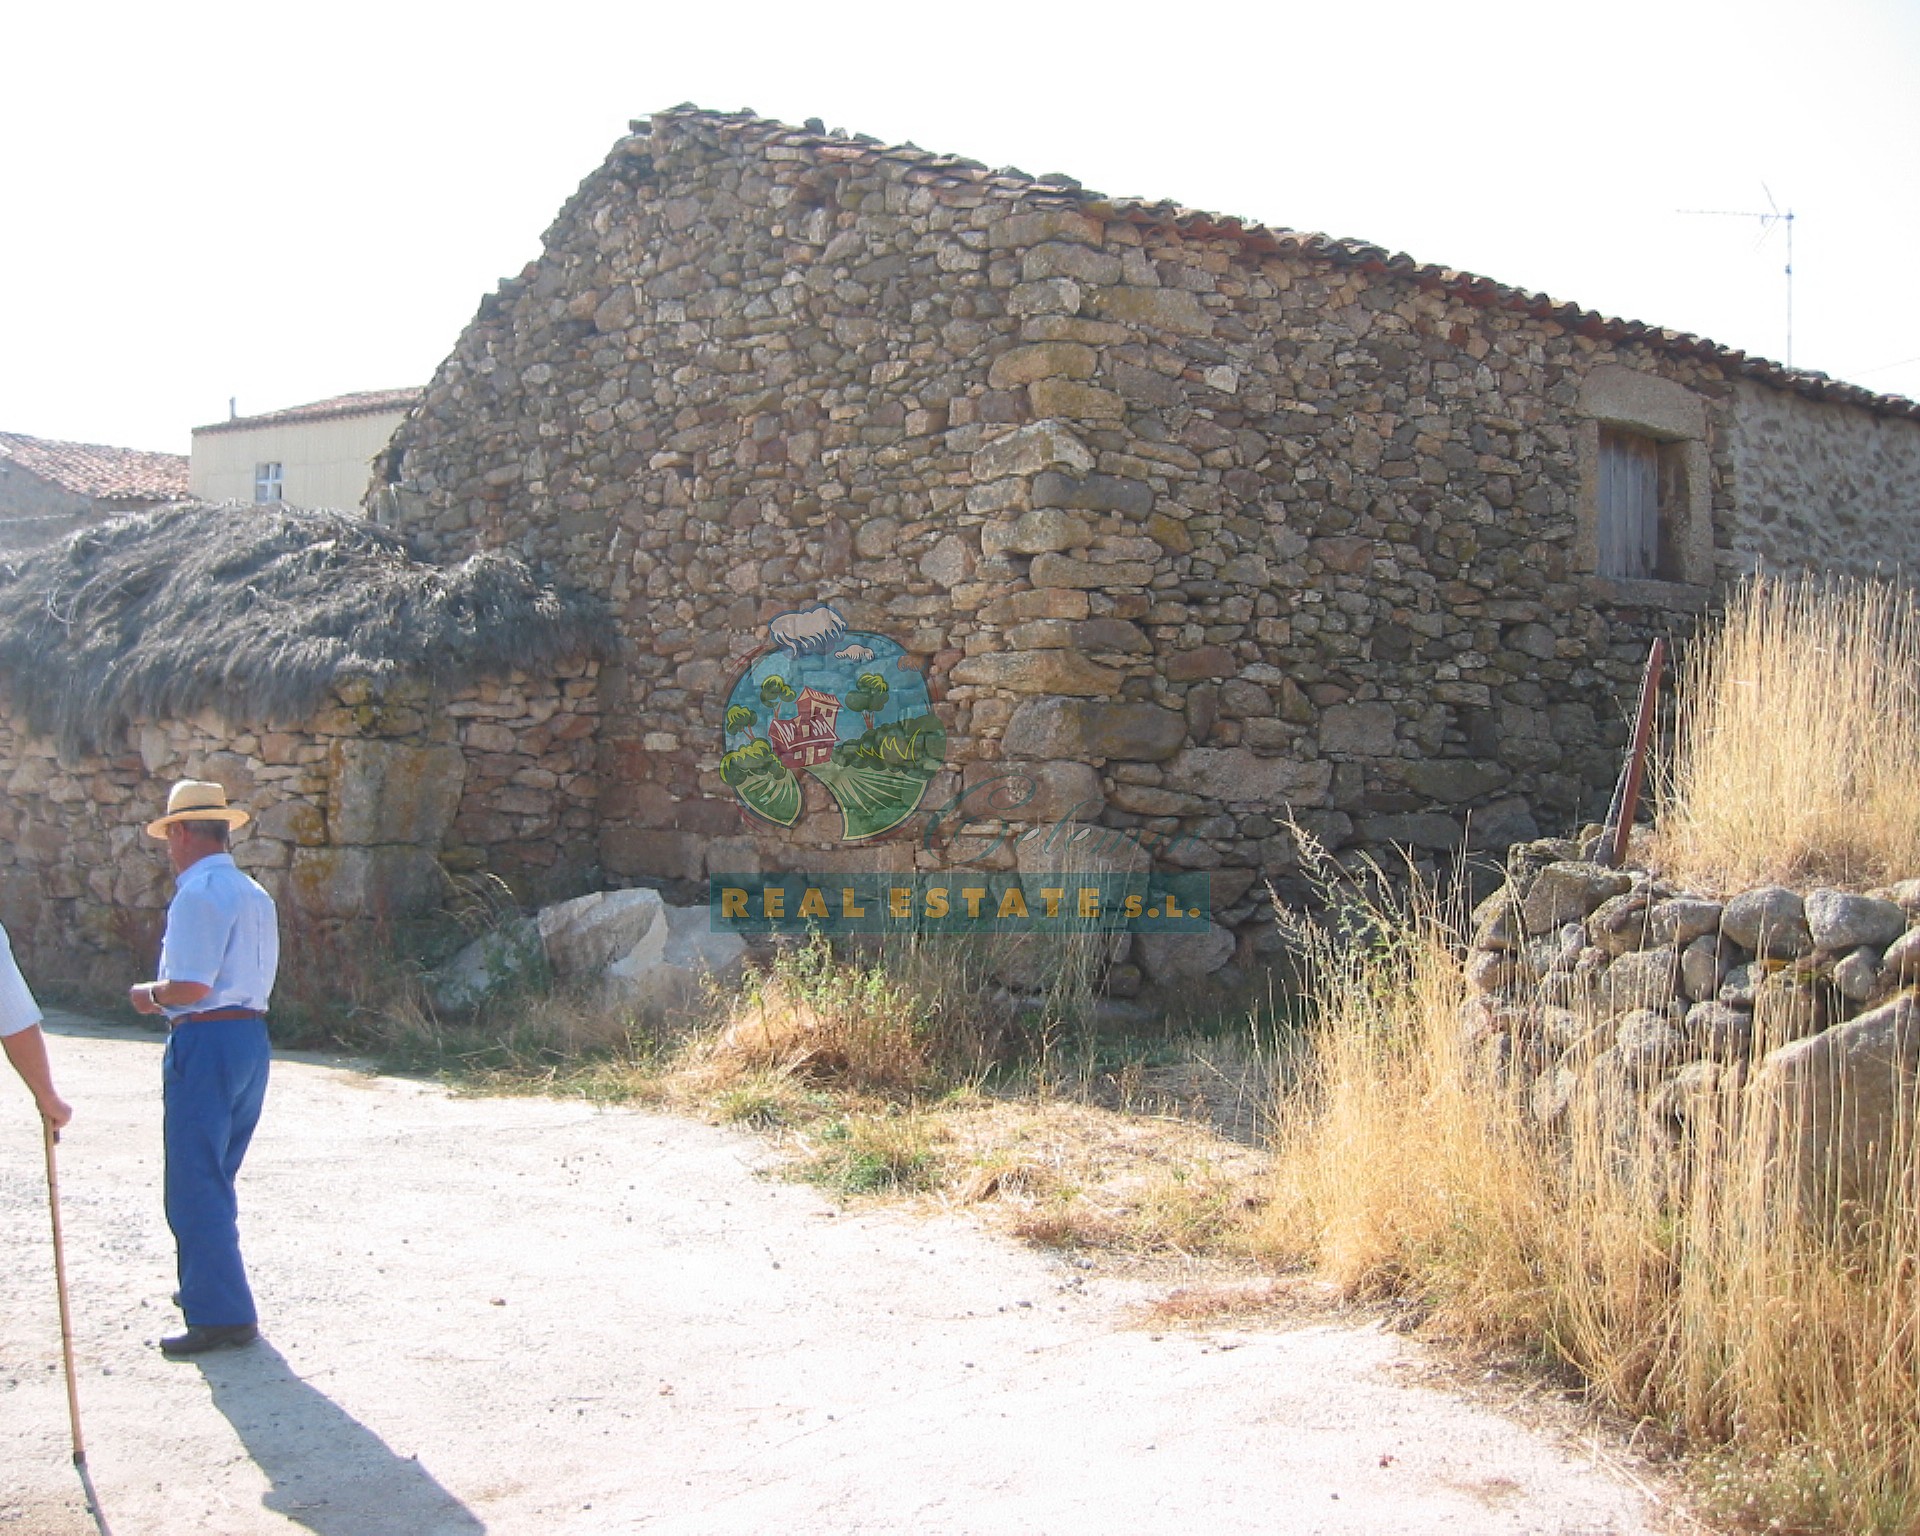 In San Martín de la Vega del Alberche.